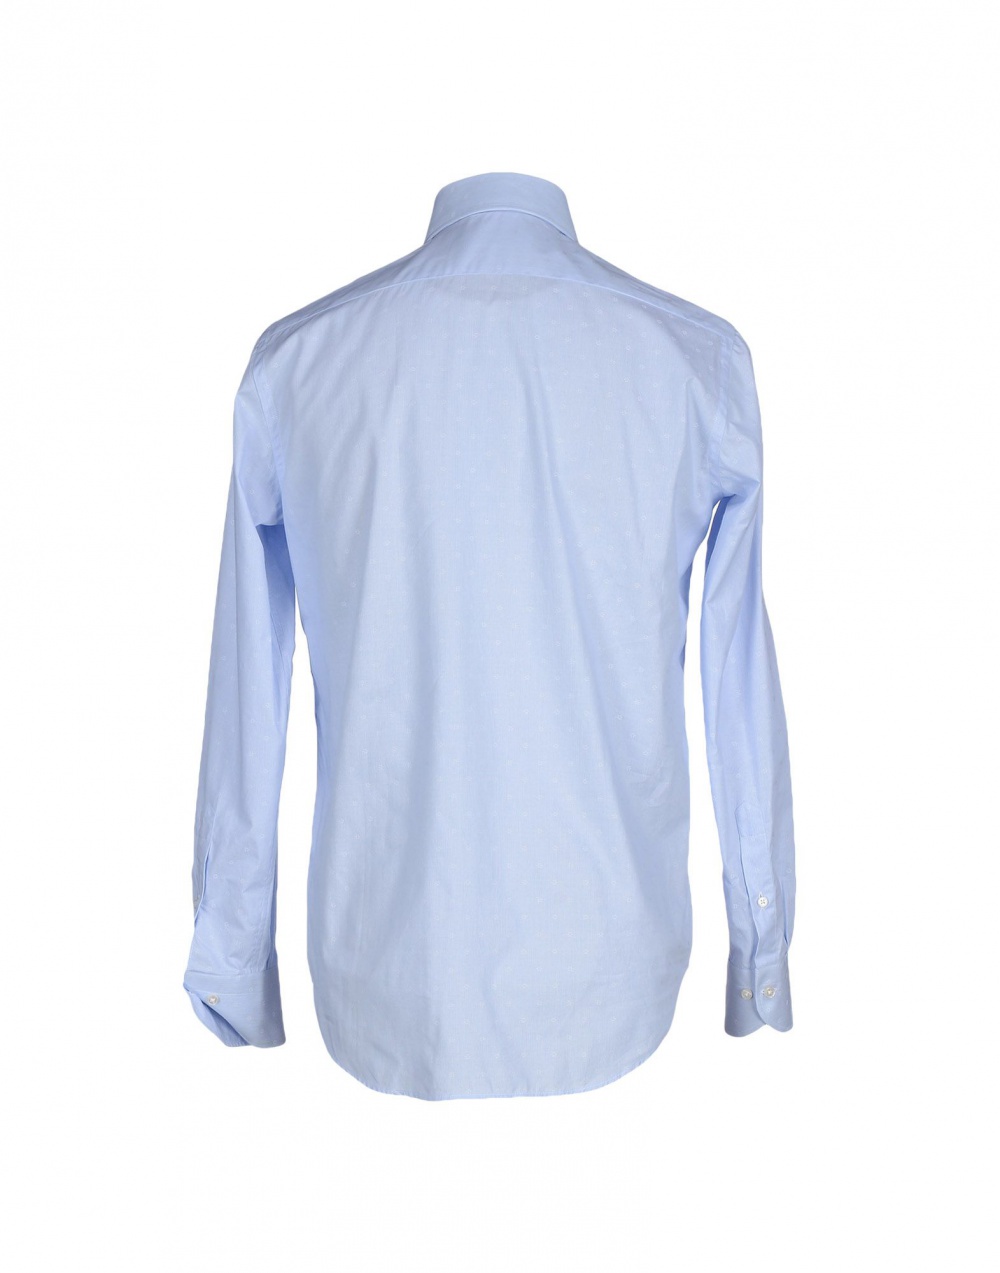 Мужская рубашка CALIBAN, 48 (Российский размер) дизайнер:IV (IT) Небесно-голубой. Большемерит.